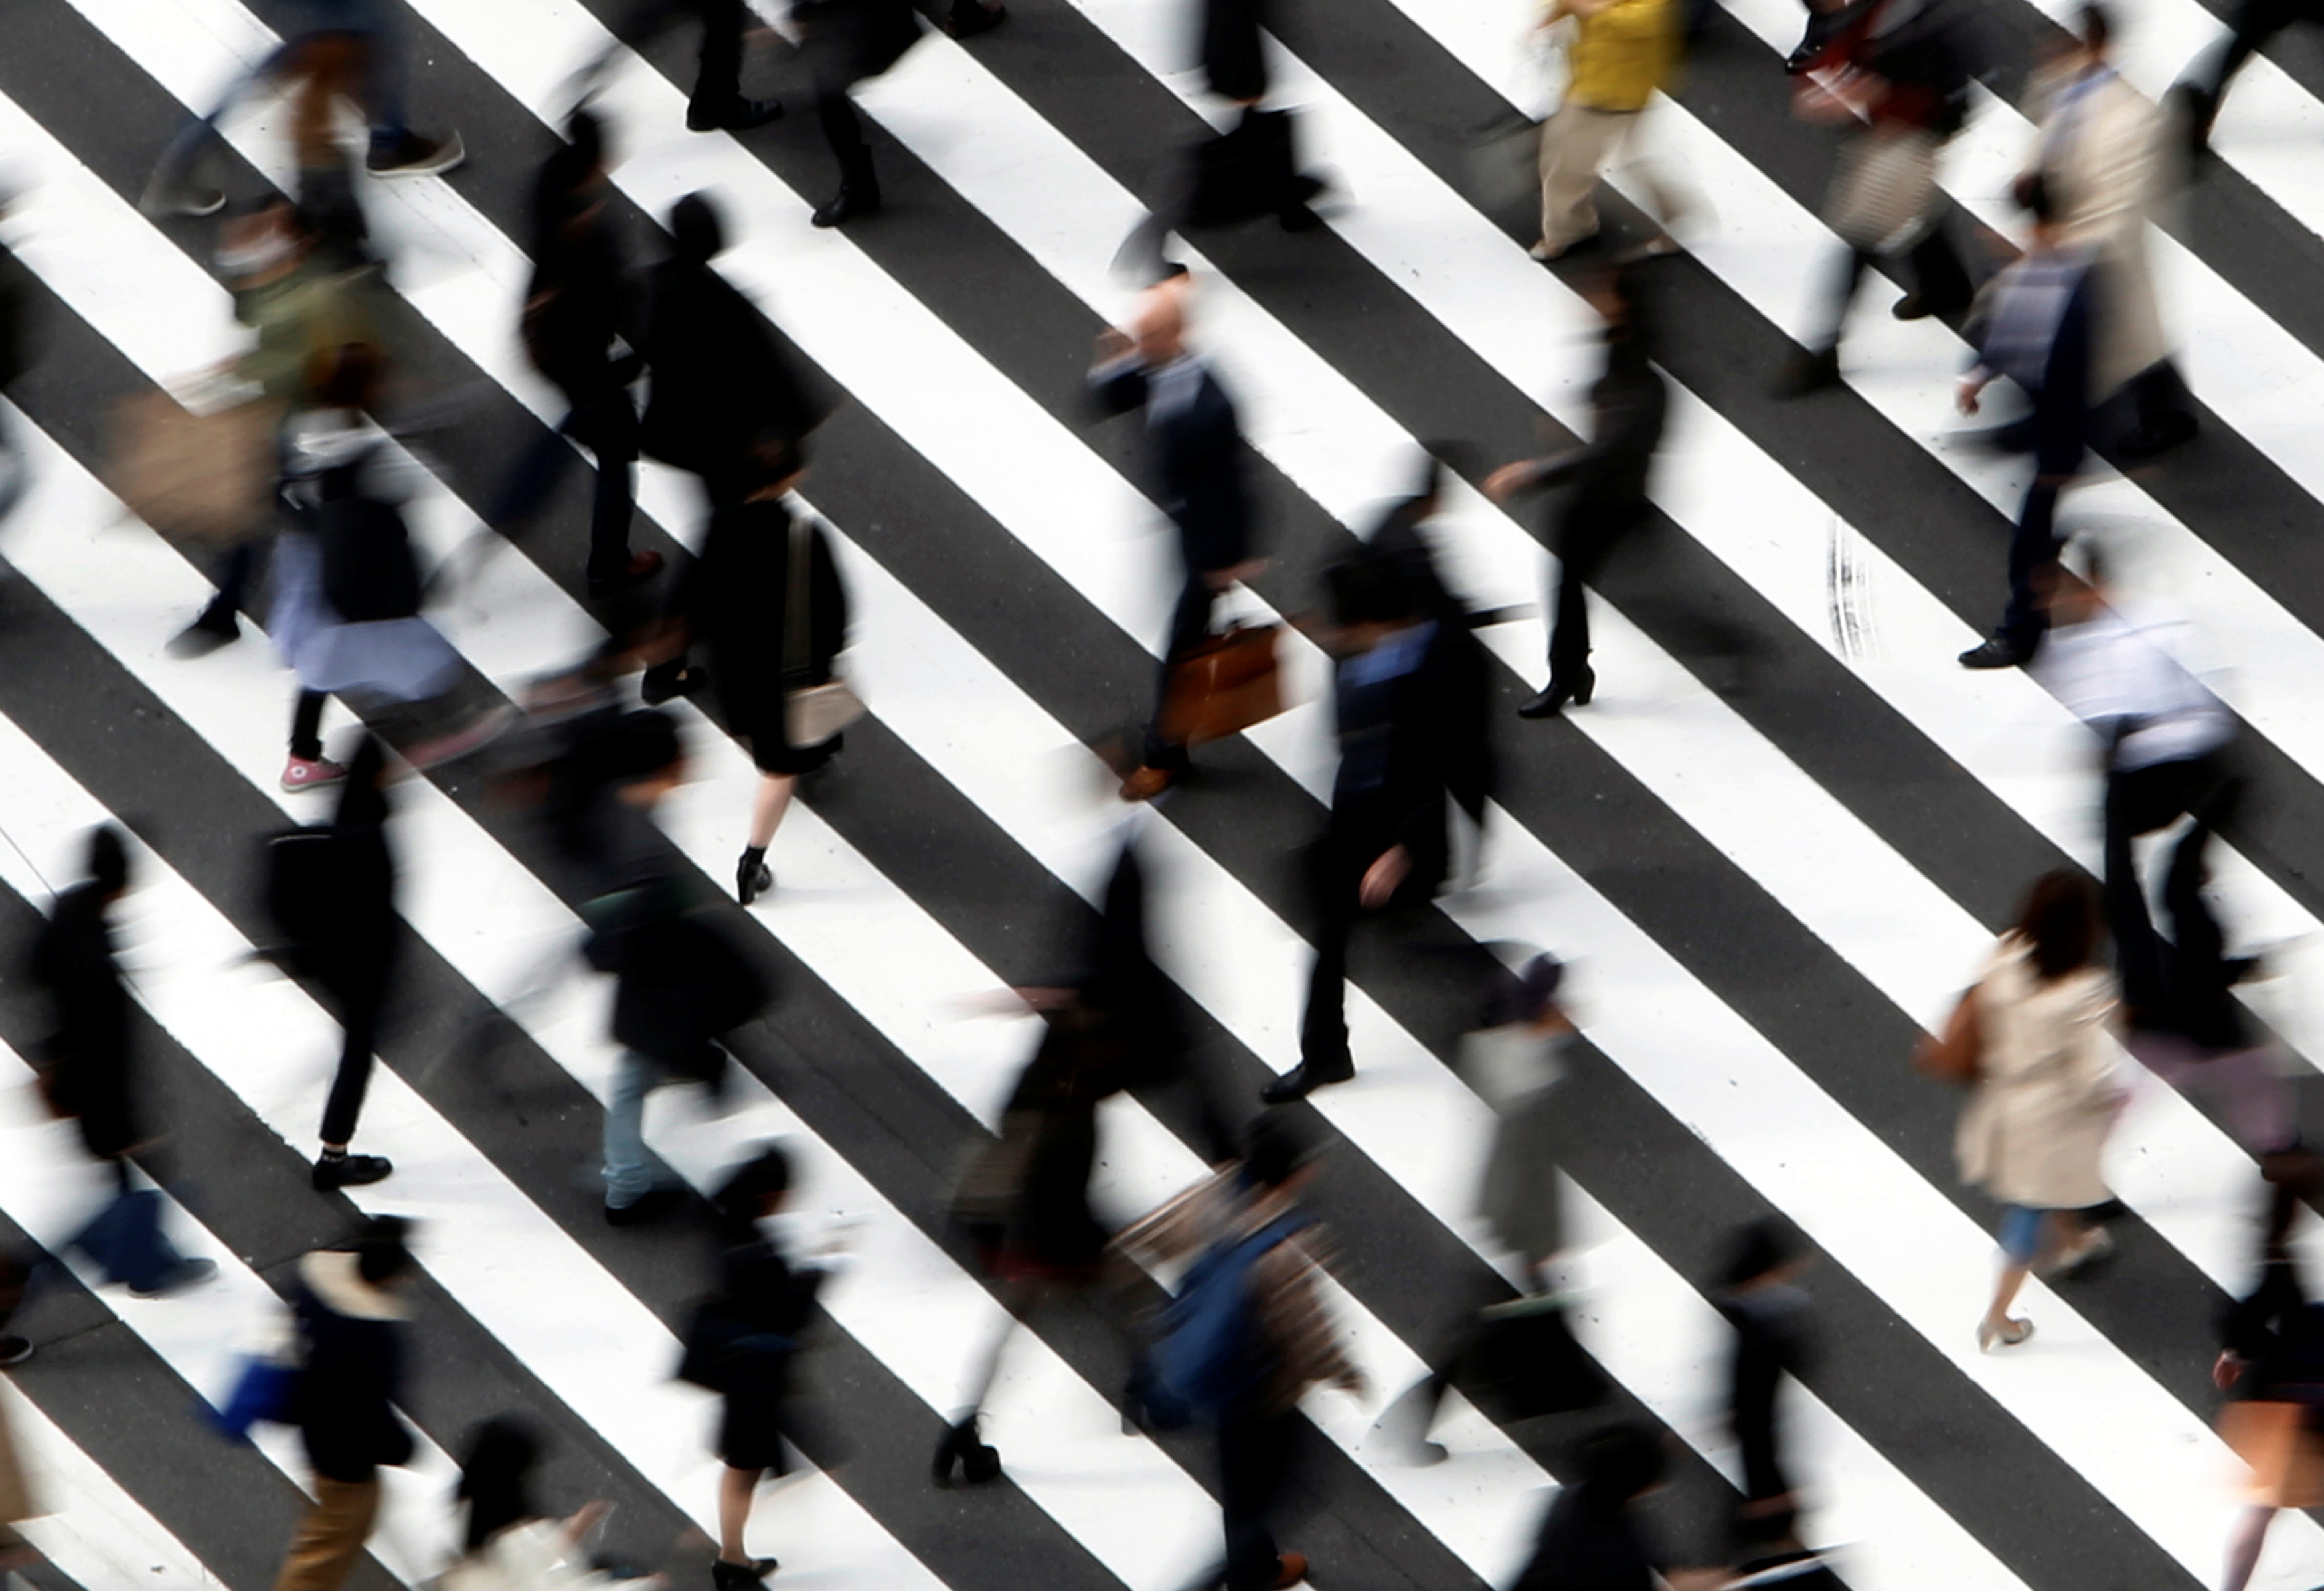 People cross a street in Tokyo